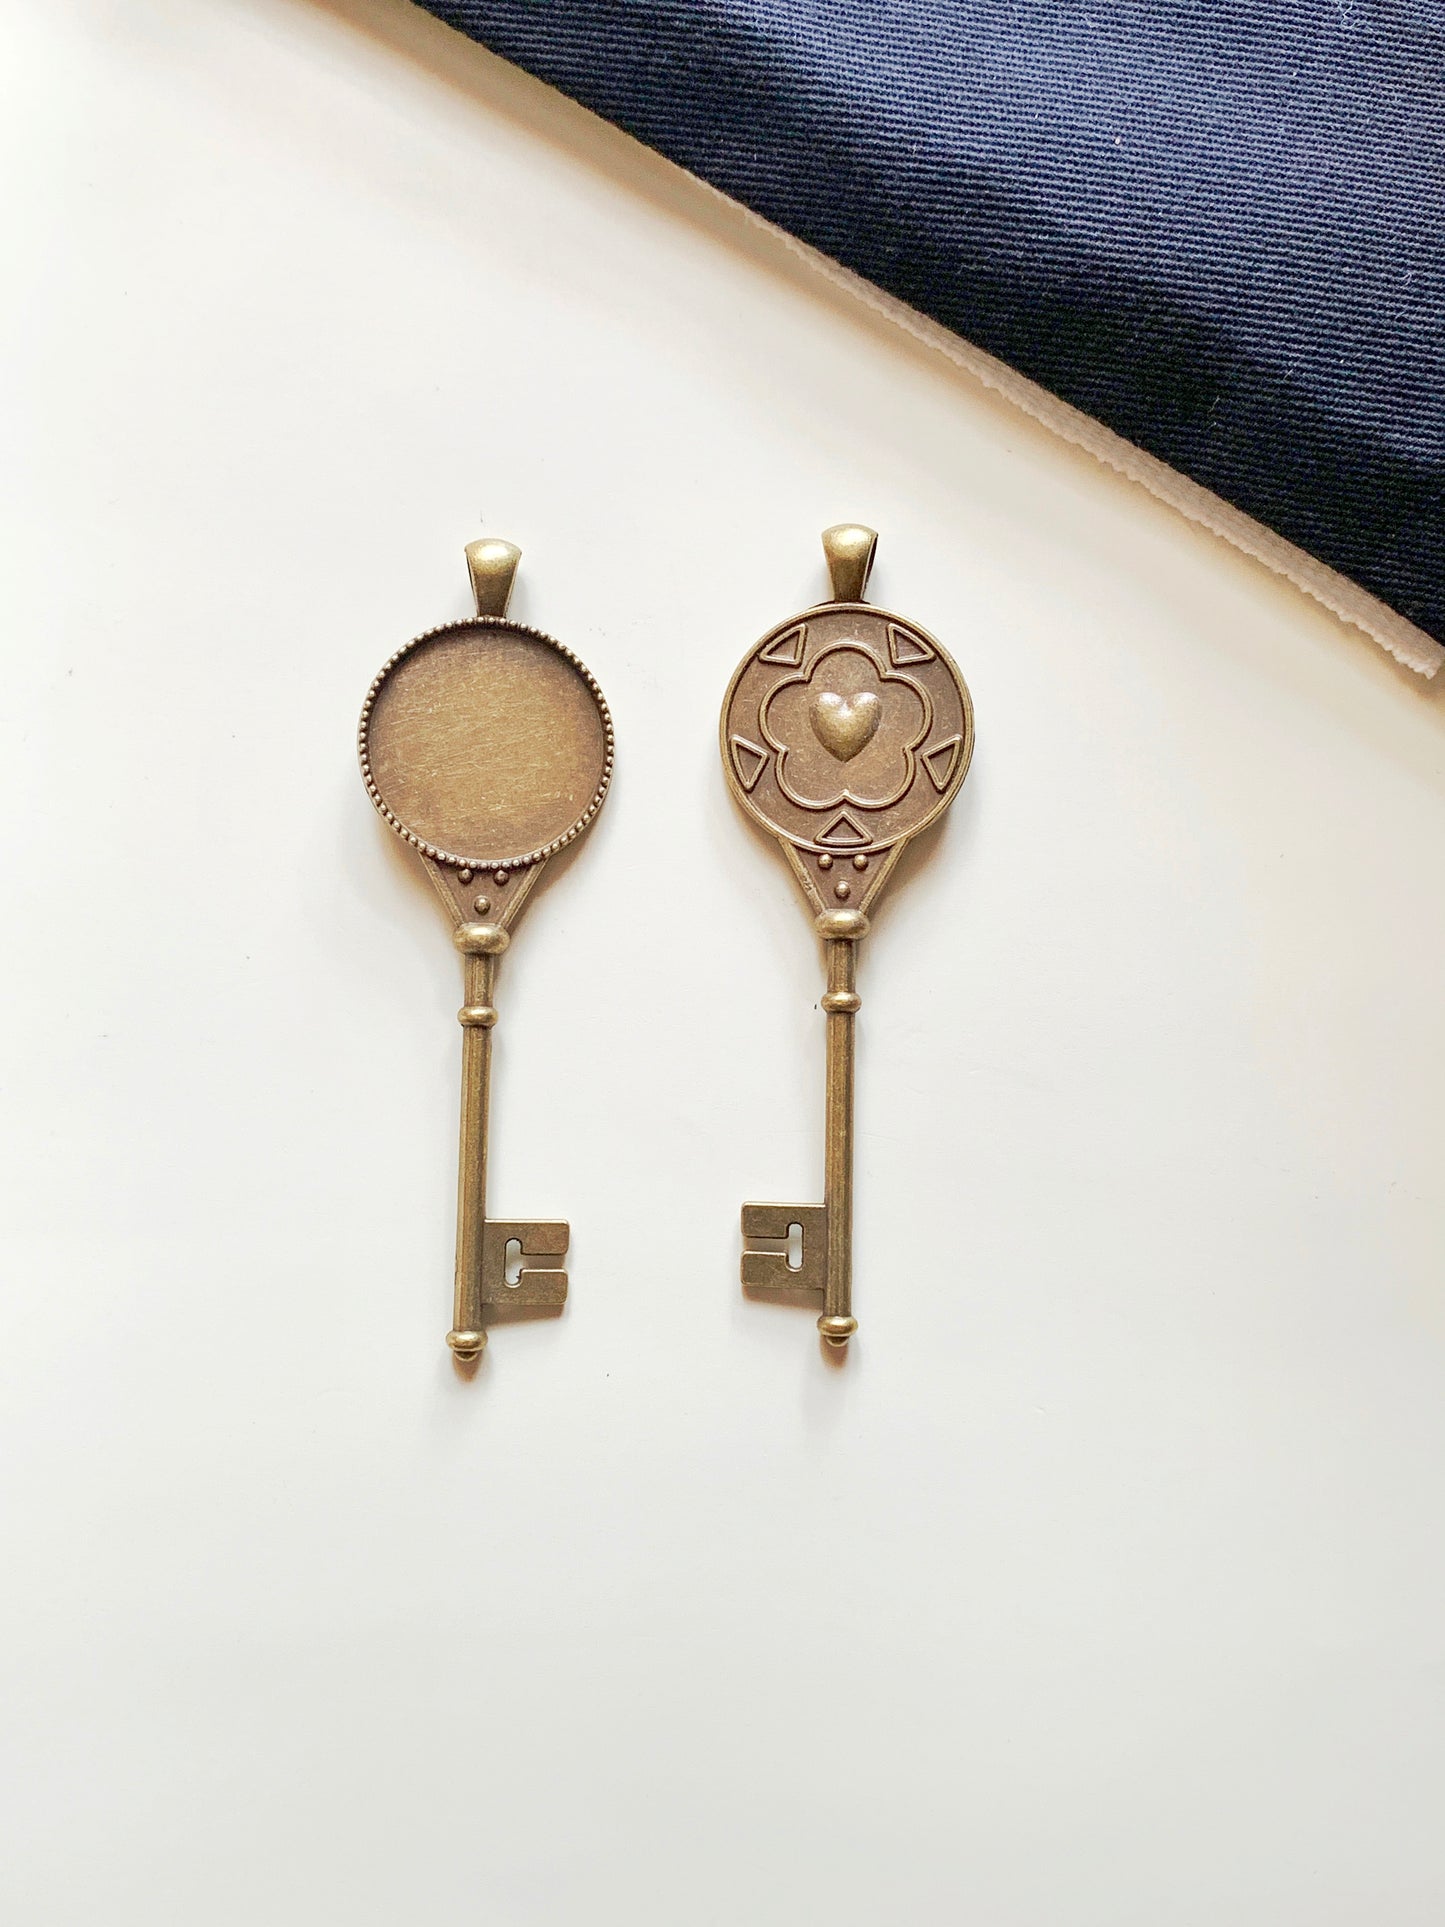 Vintage Key Charm - Antique